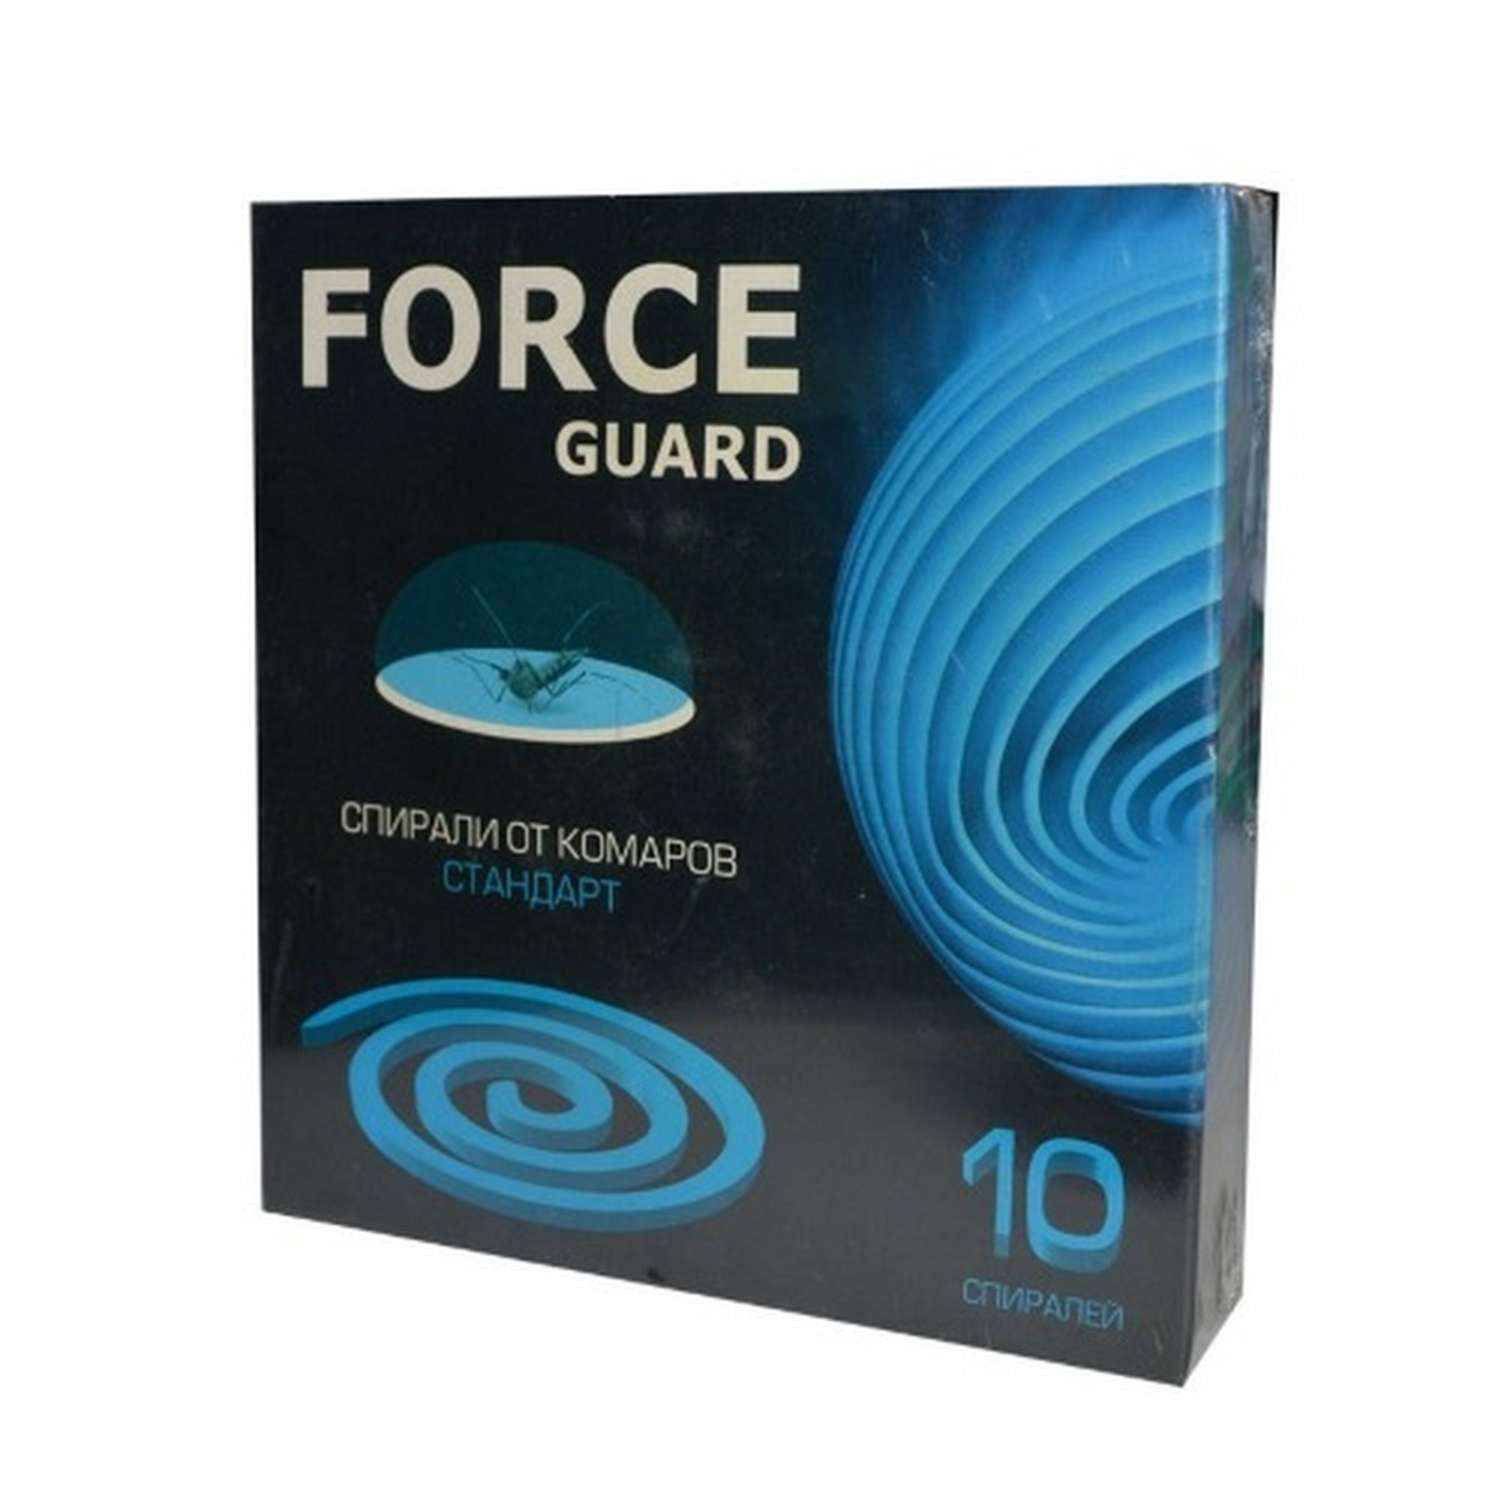 Спирали Force Guard стандарт синие 10 шт - фото 1